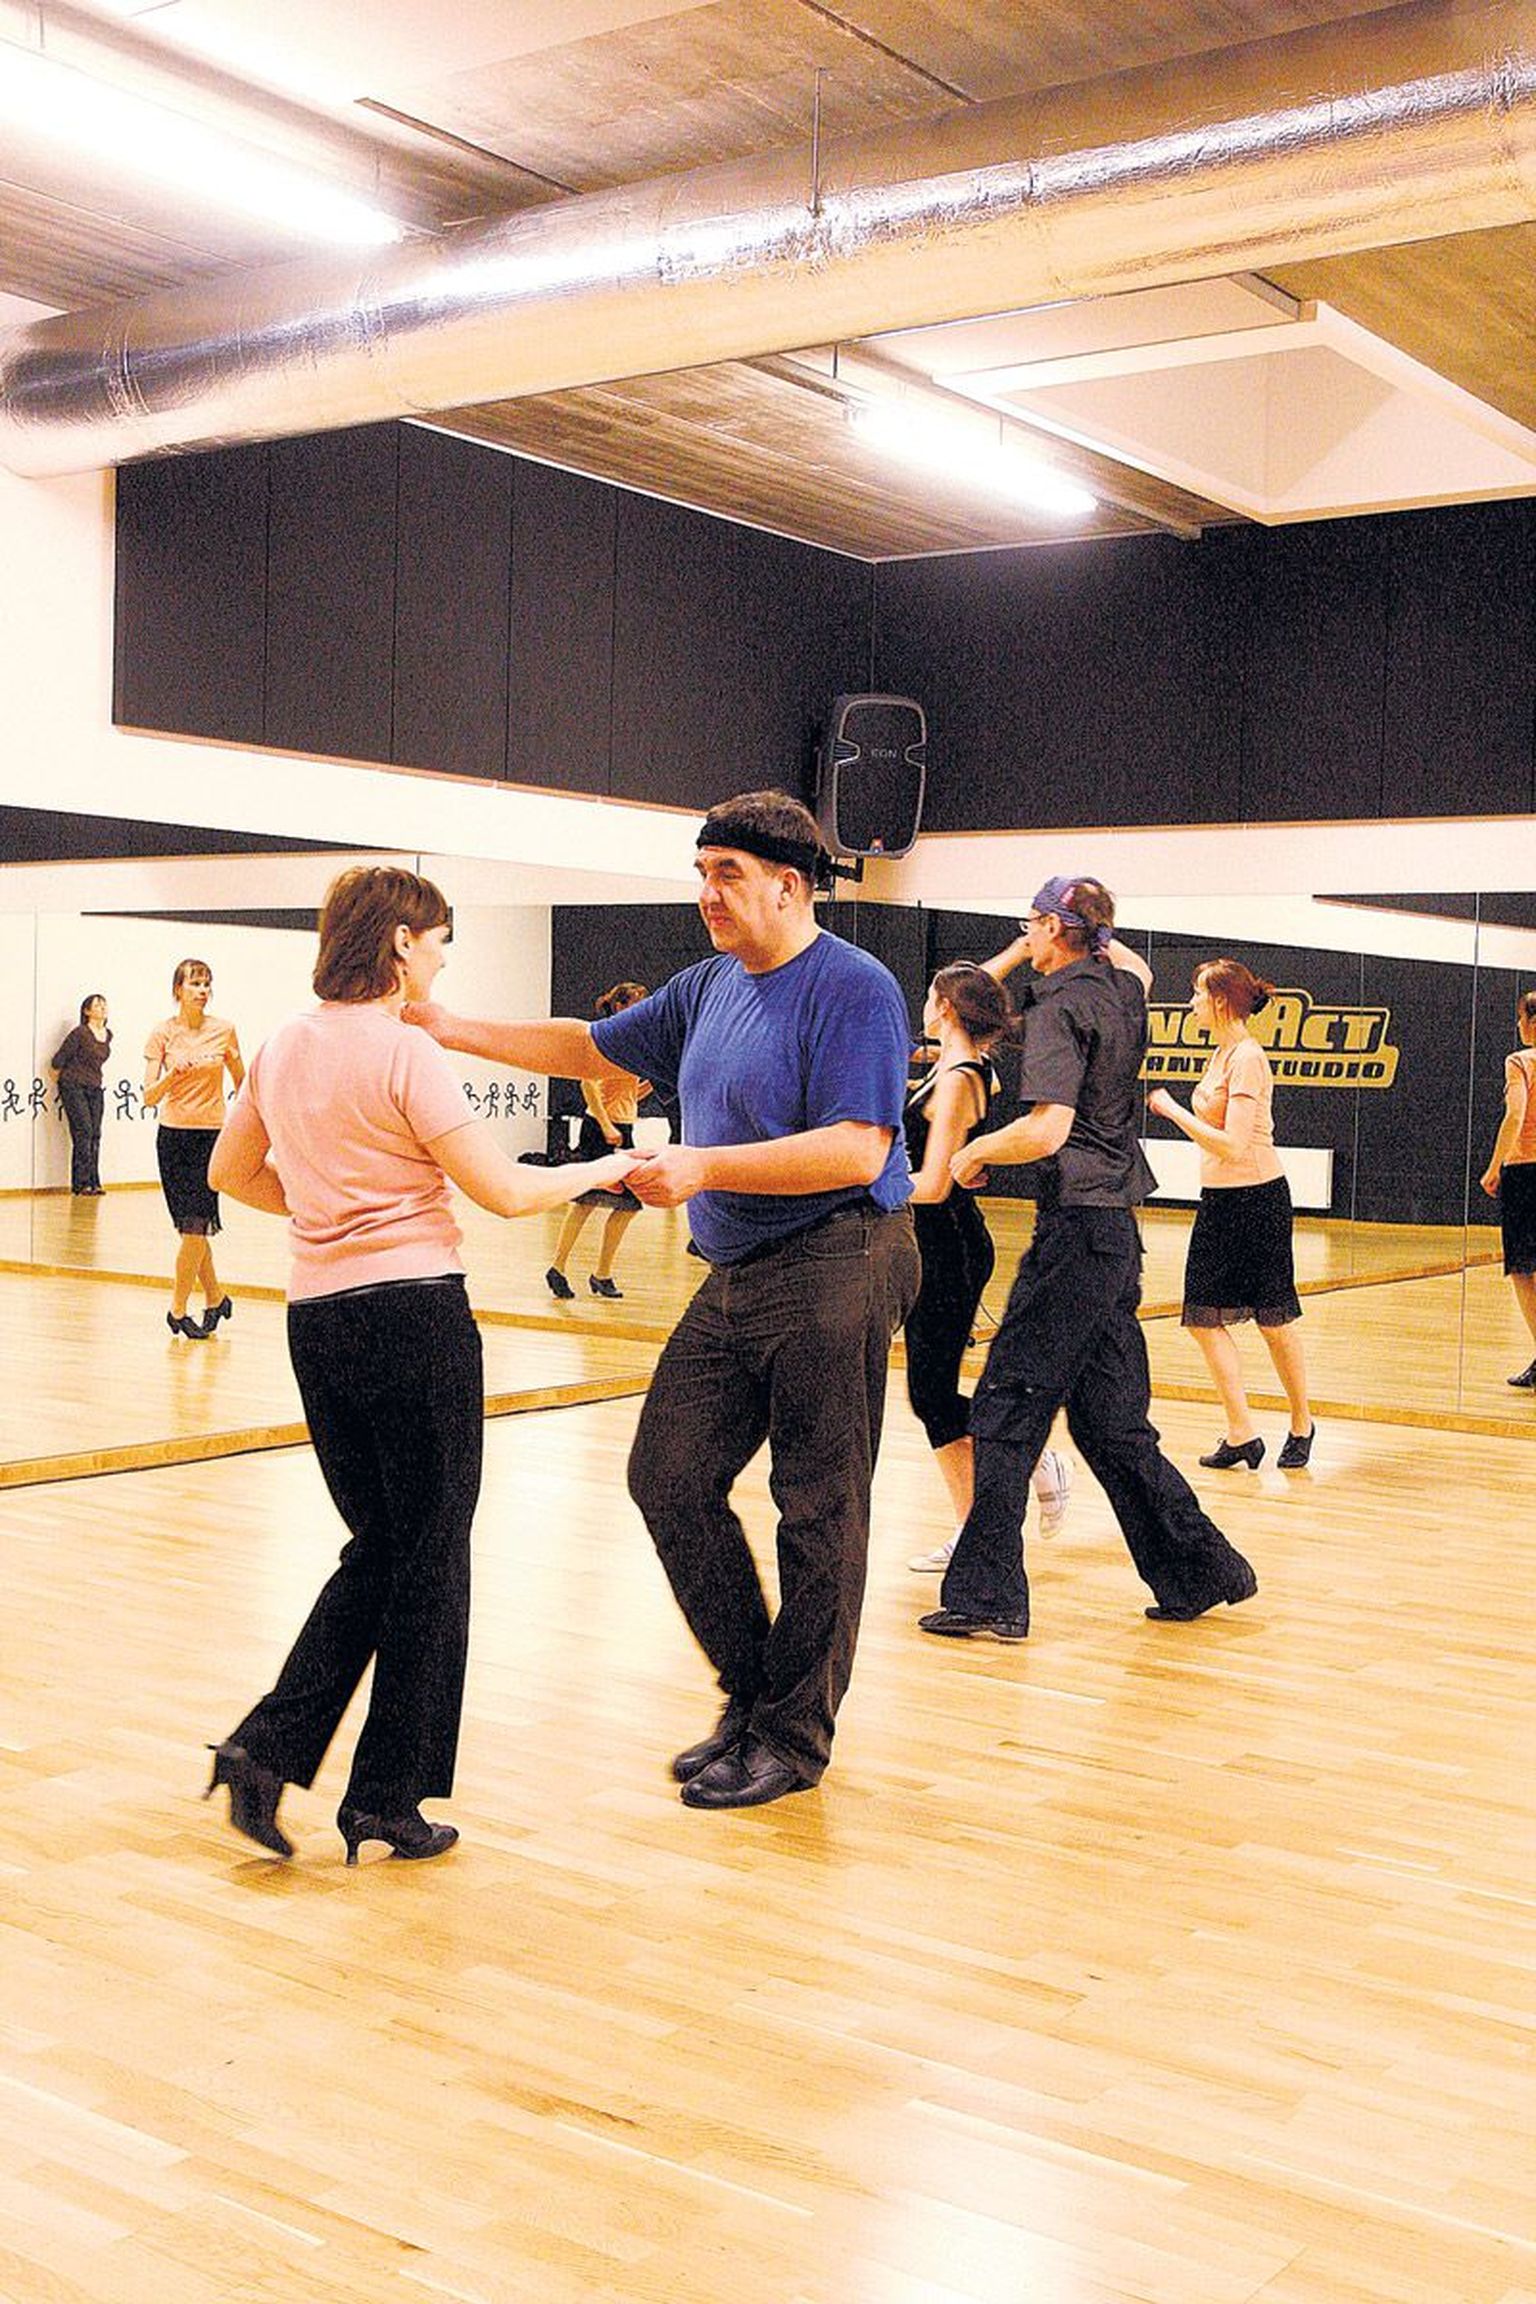 Kalle Kullman ja Marge Sults ning teised paarid harjutasid Tähtvere tantsukeskuses parajasti salsatantsu.